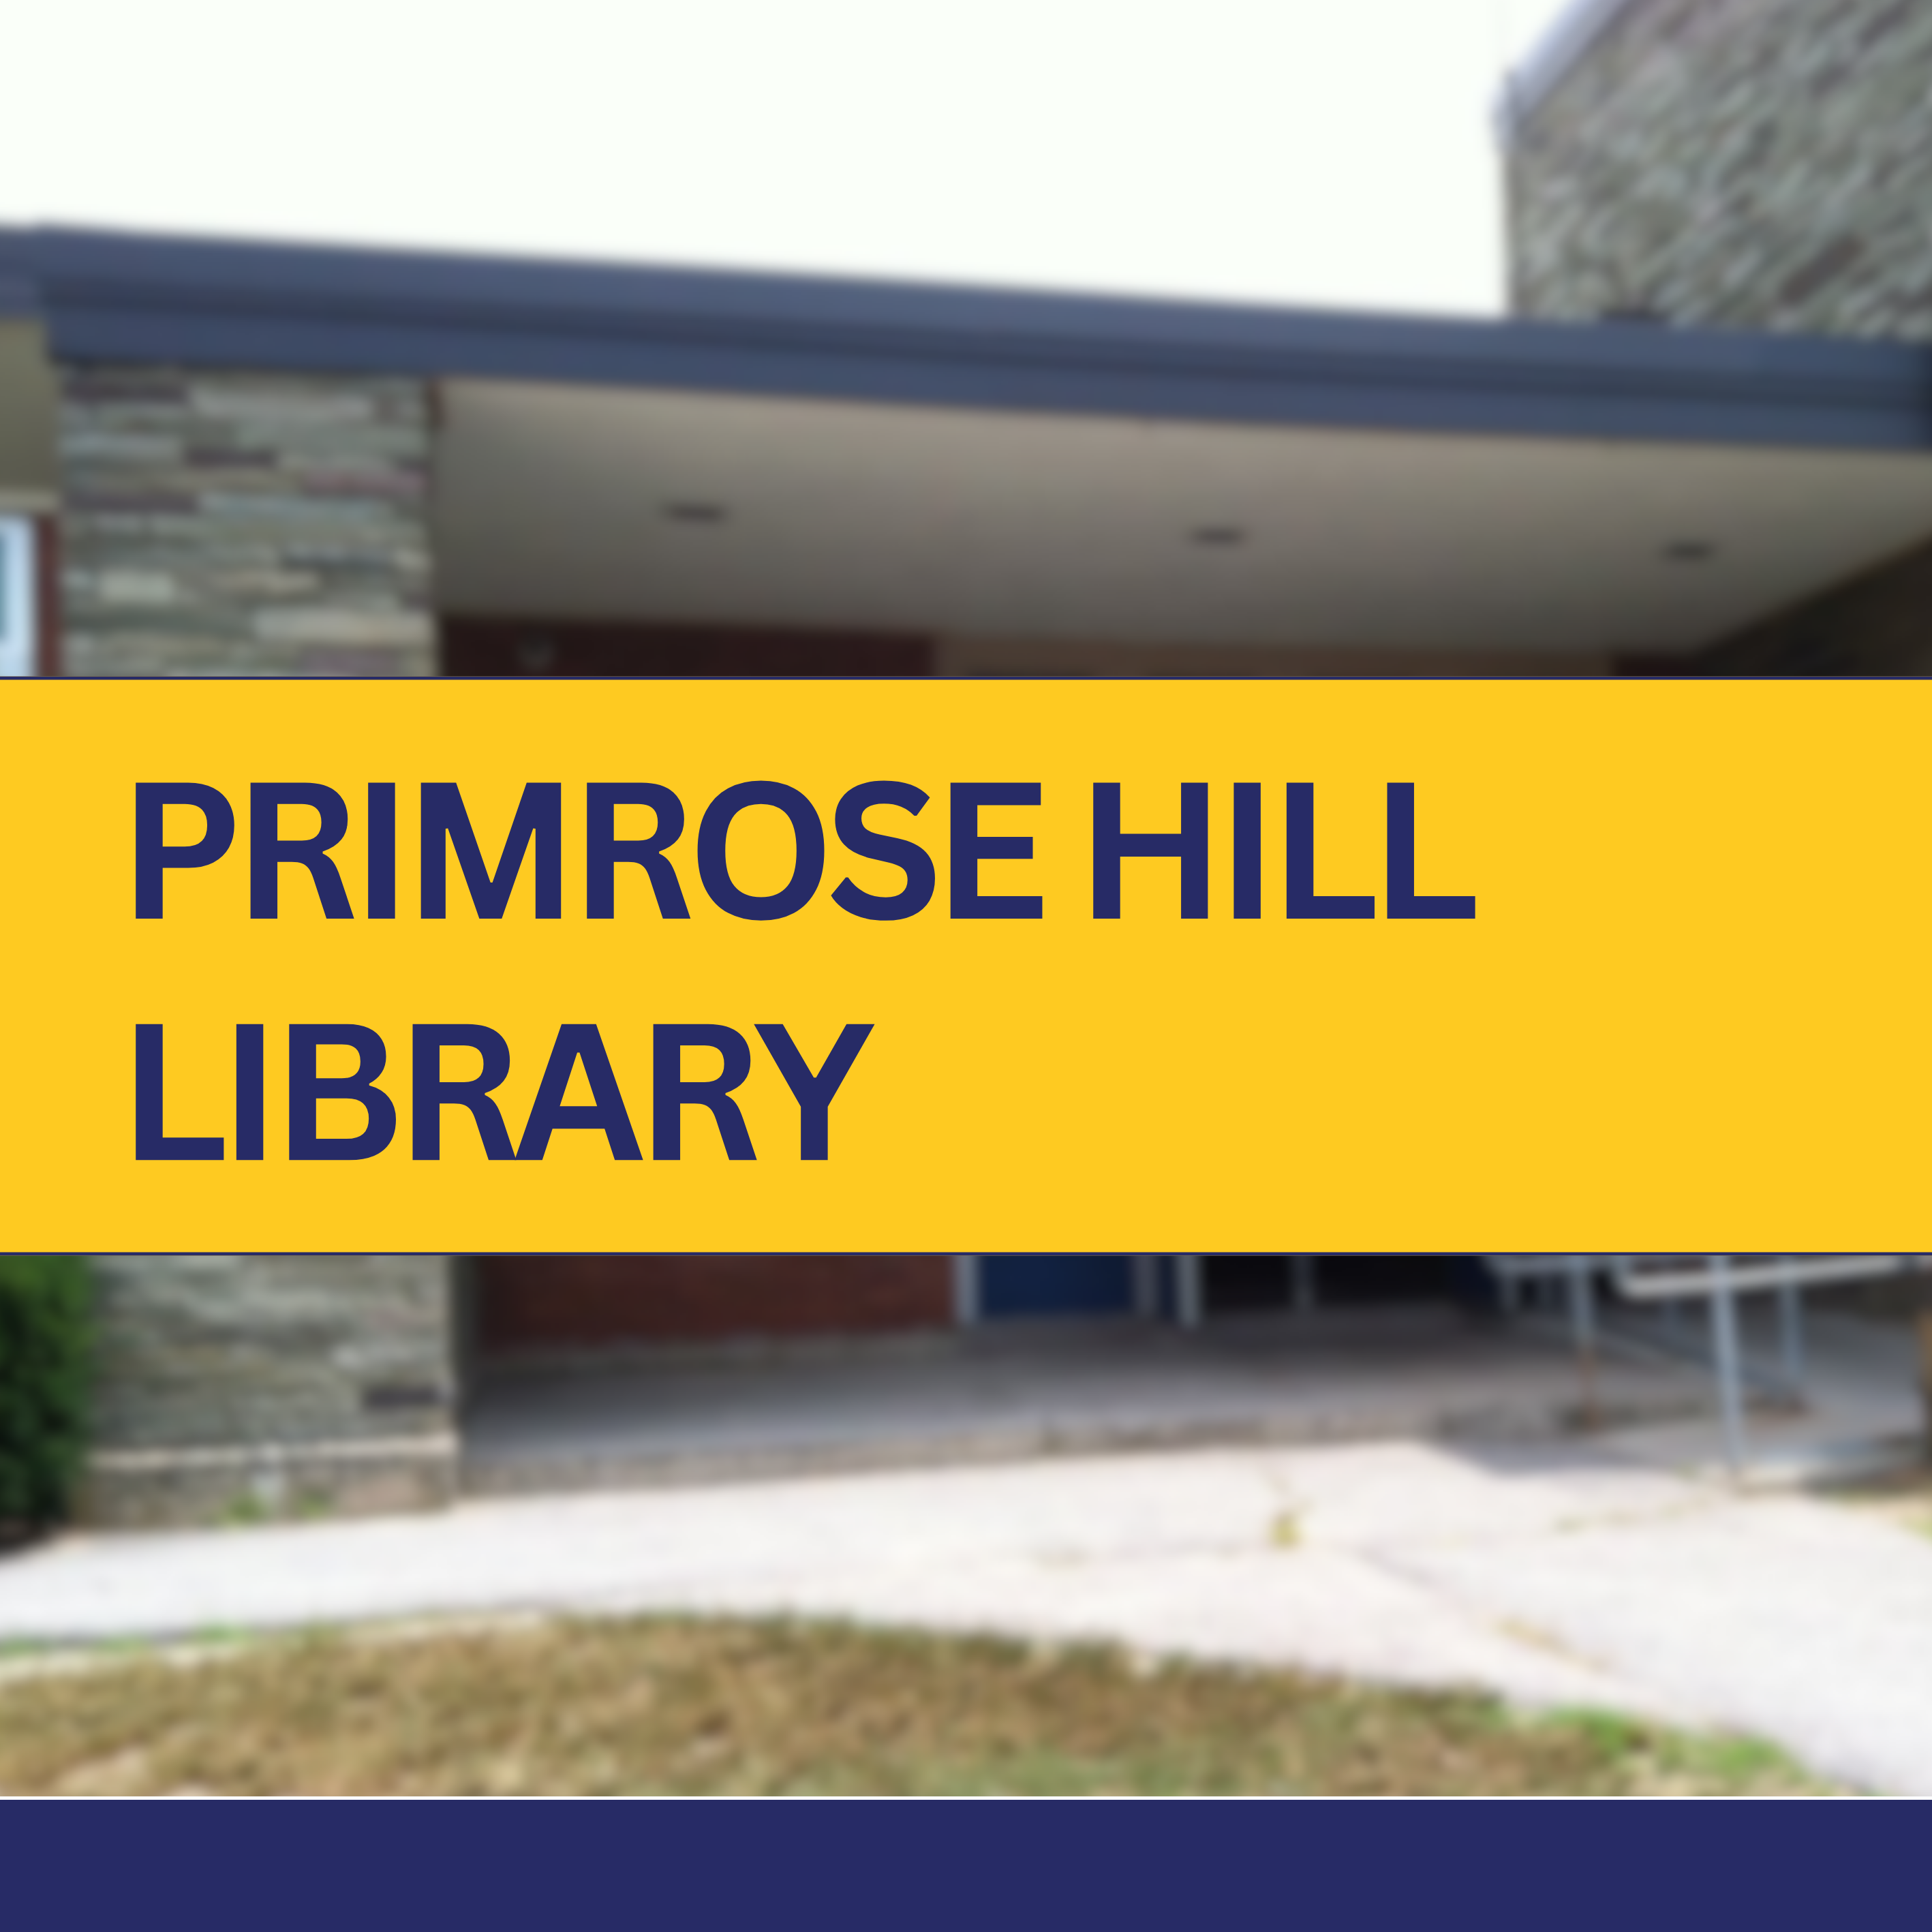 Primrose hill library